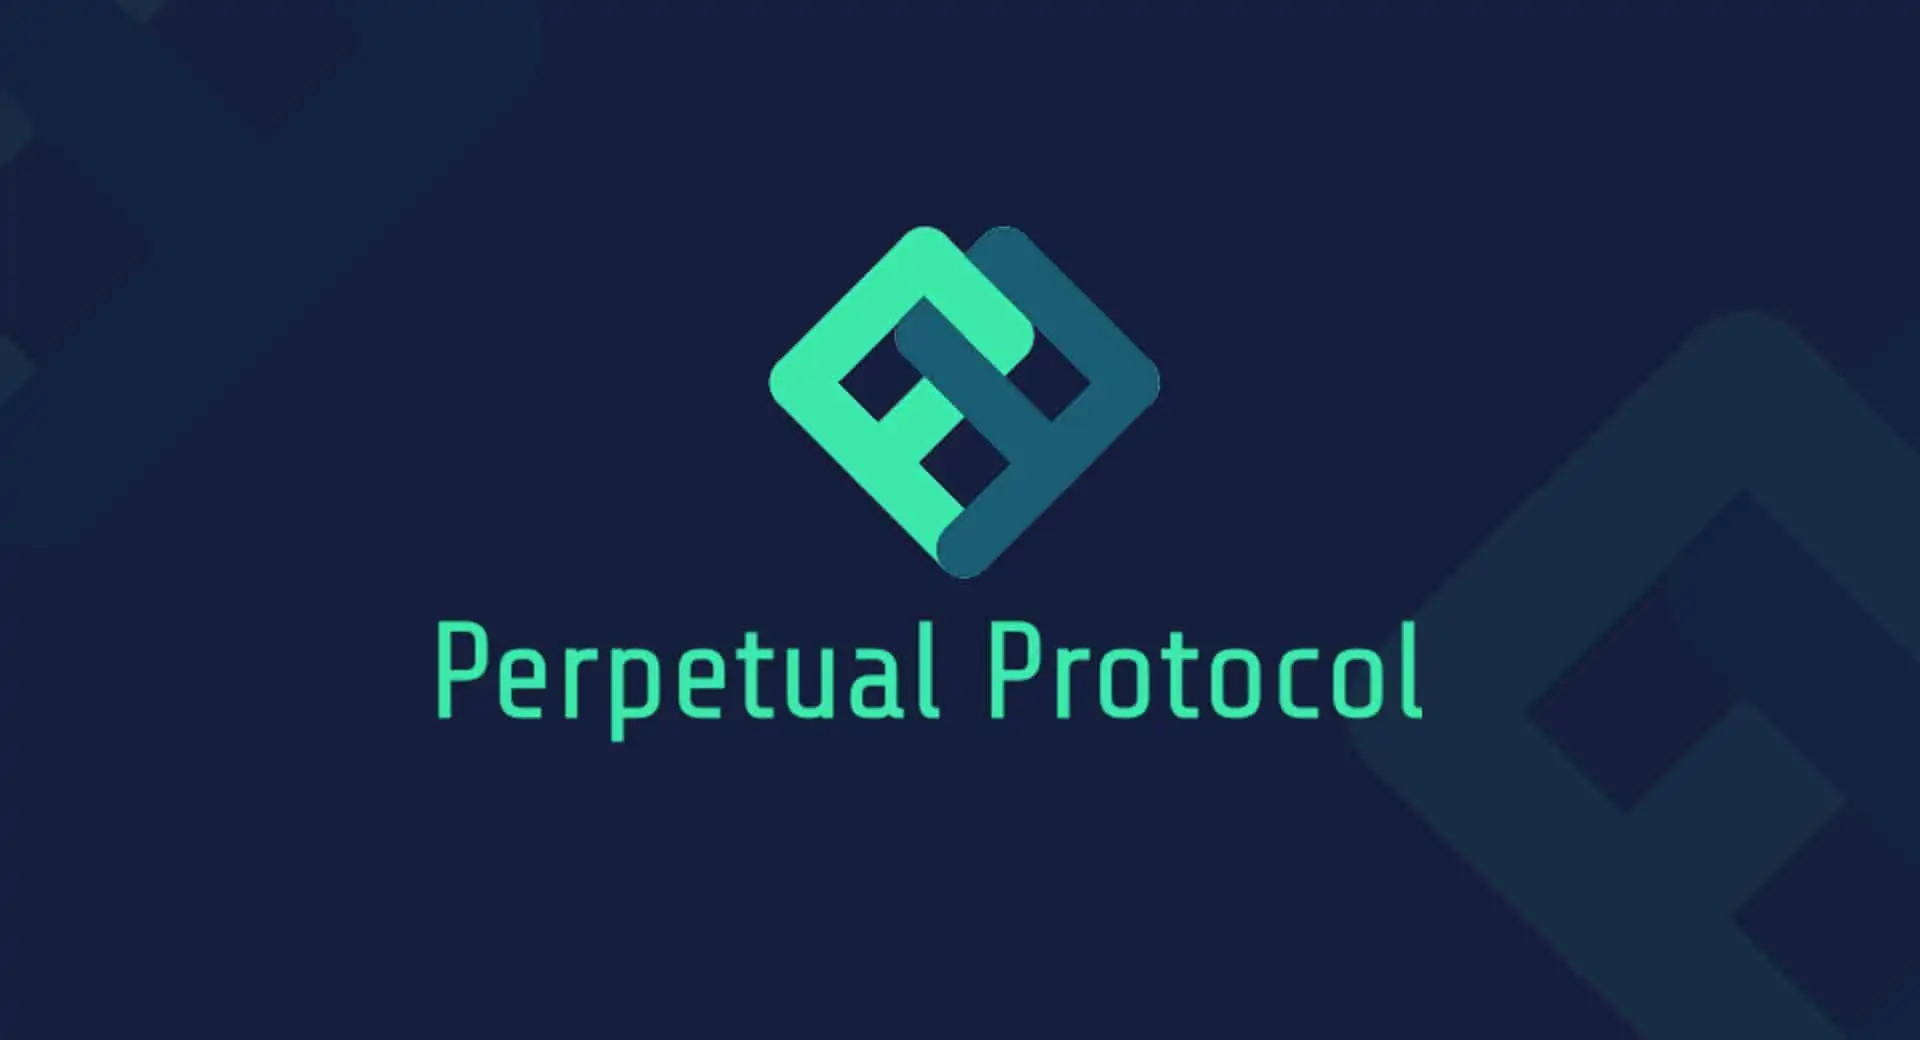 Perpetual Protocol, manejando perpetuos en Blockchain